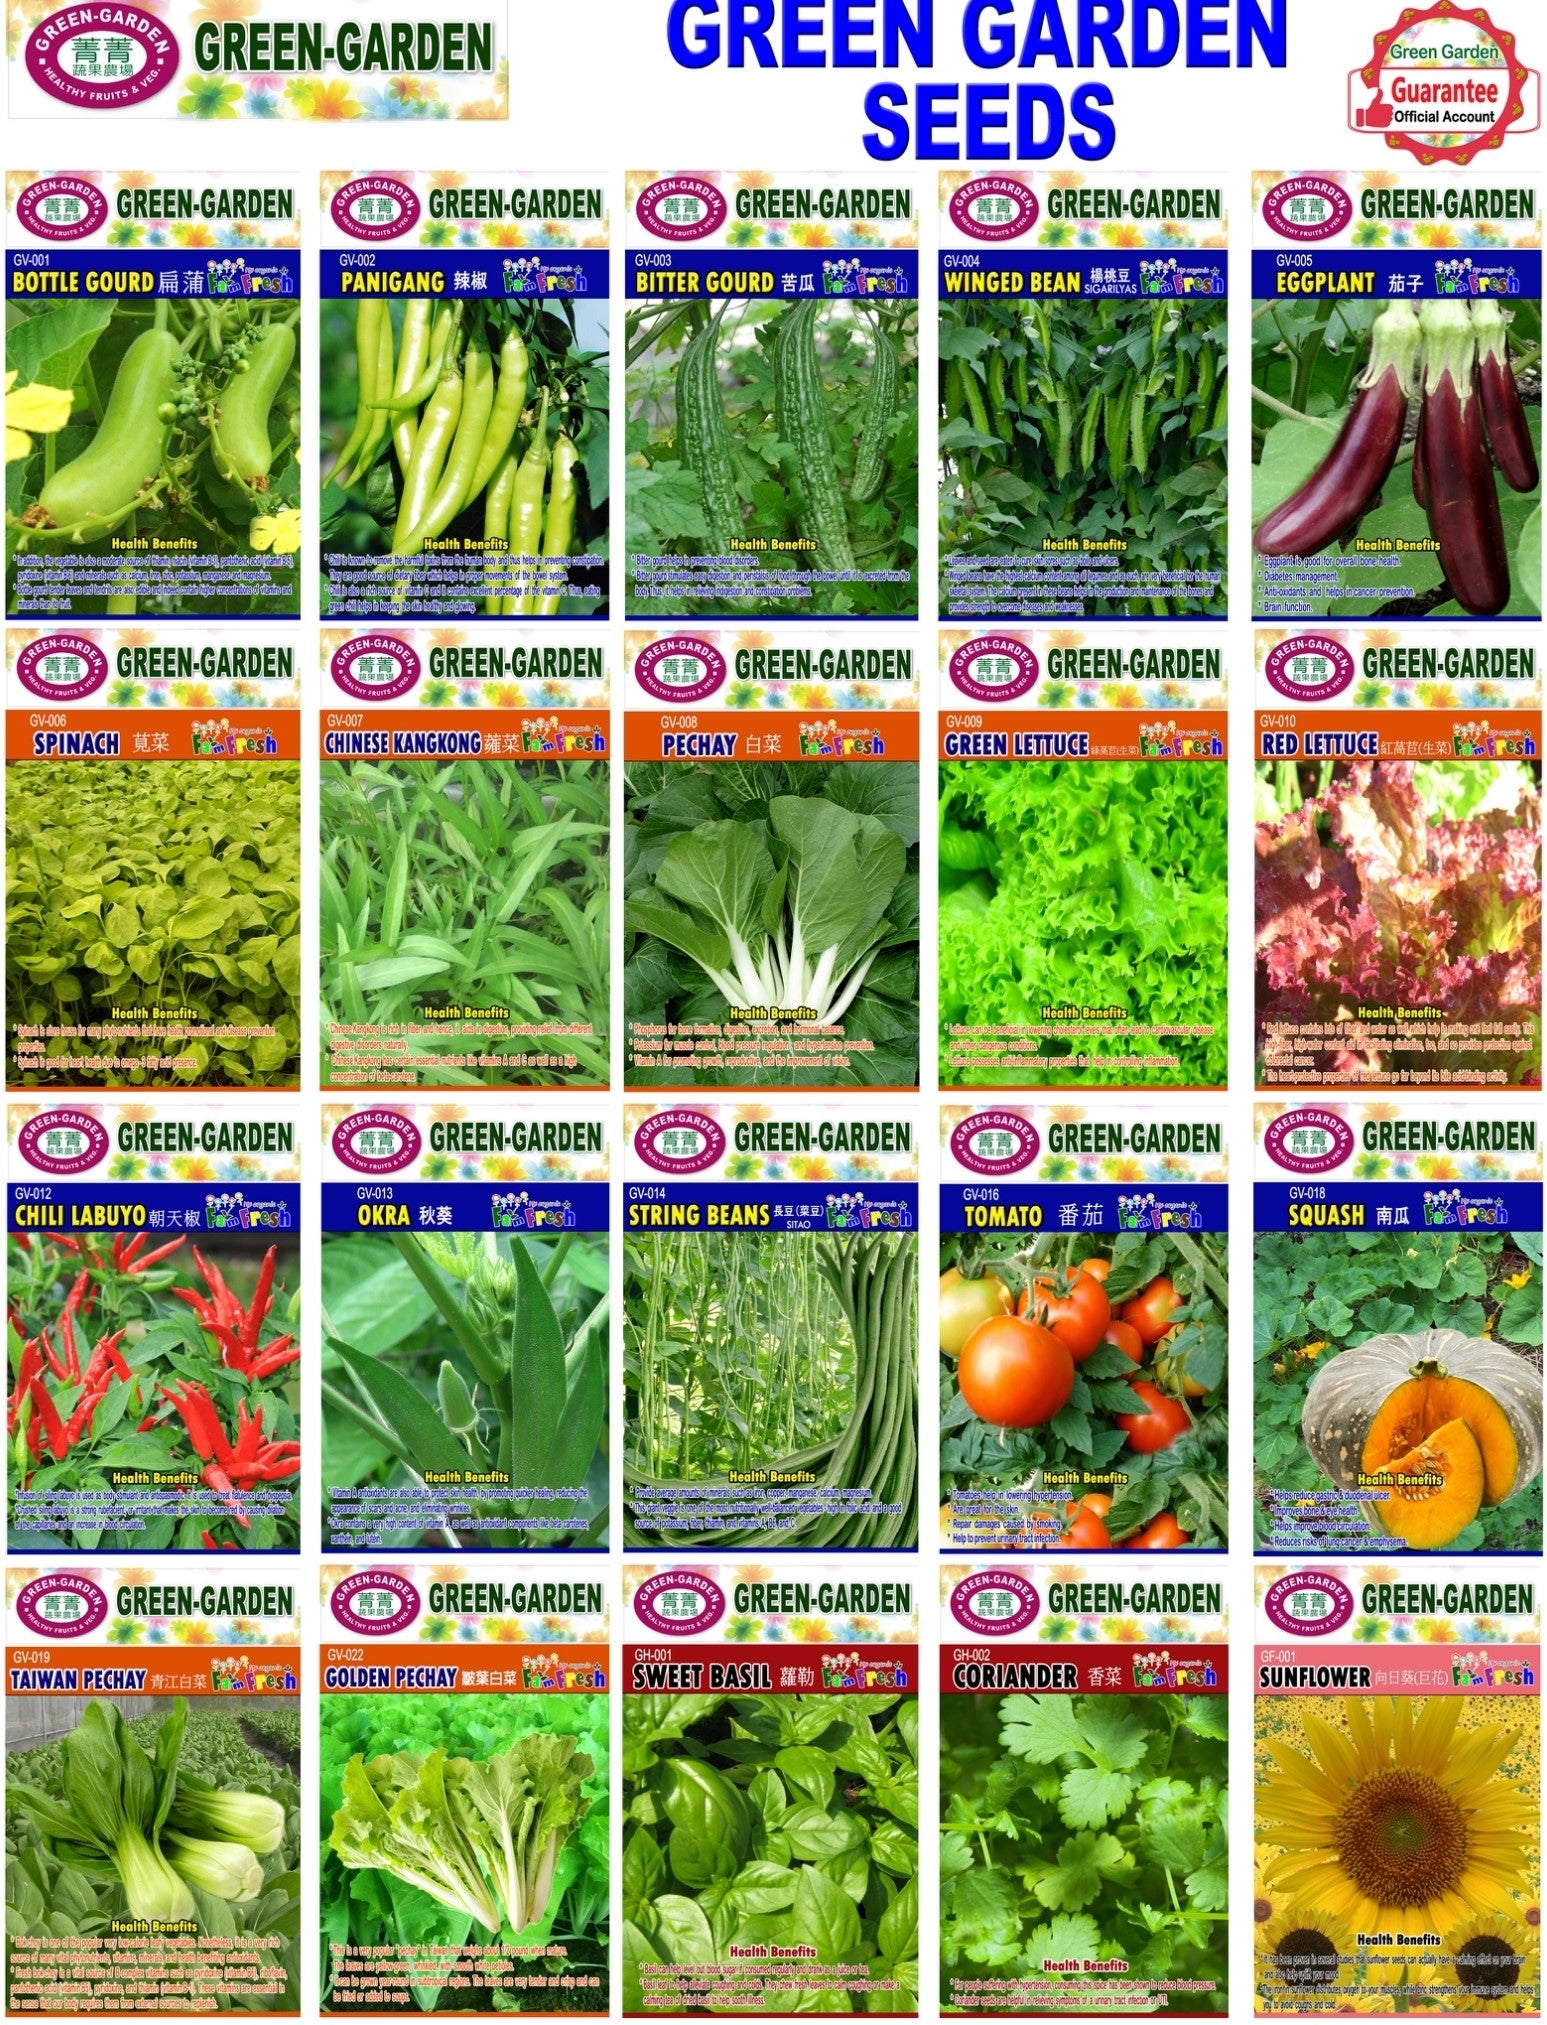 Green Garden Vegetable Seeds (GV-010 Red Lettuce)